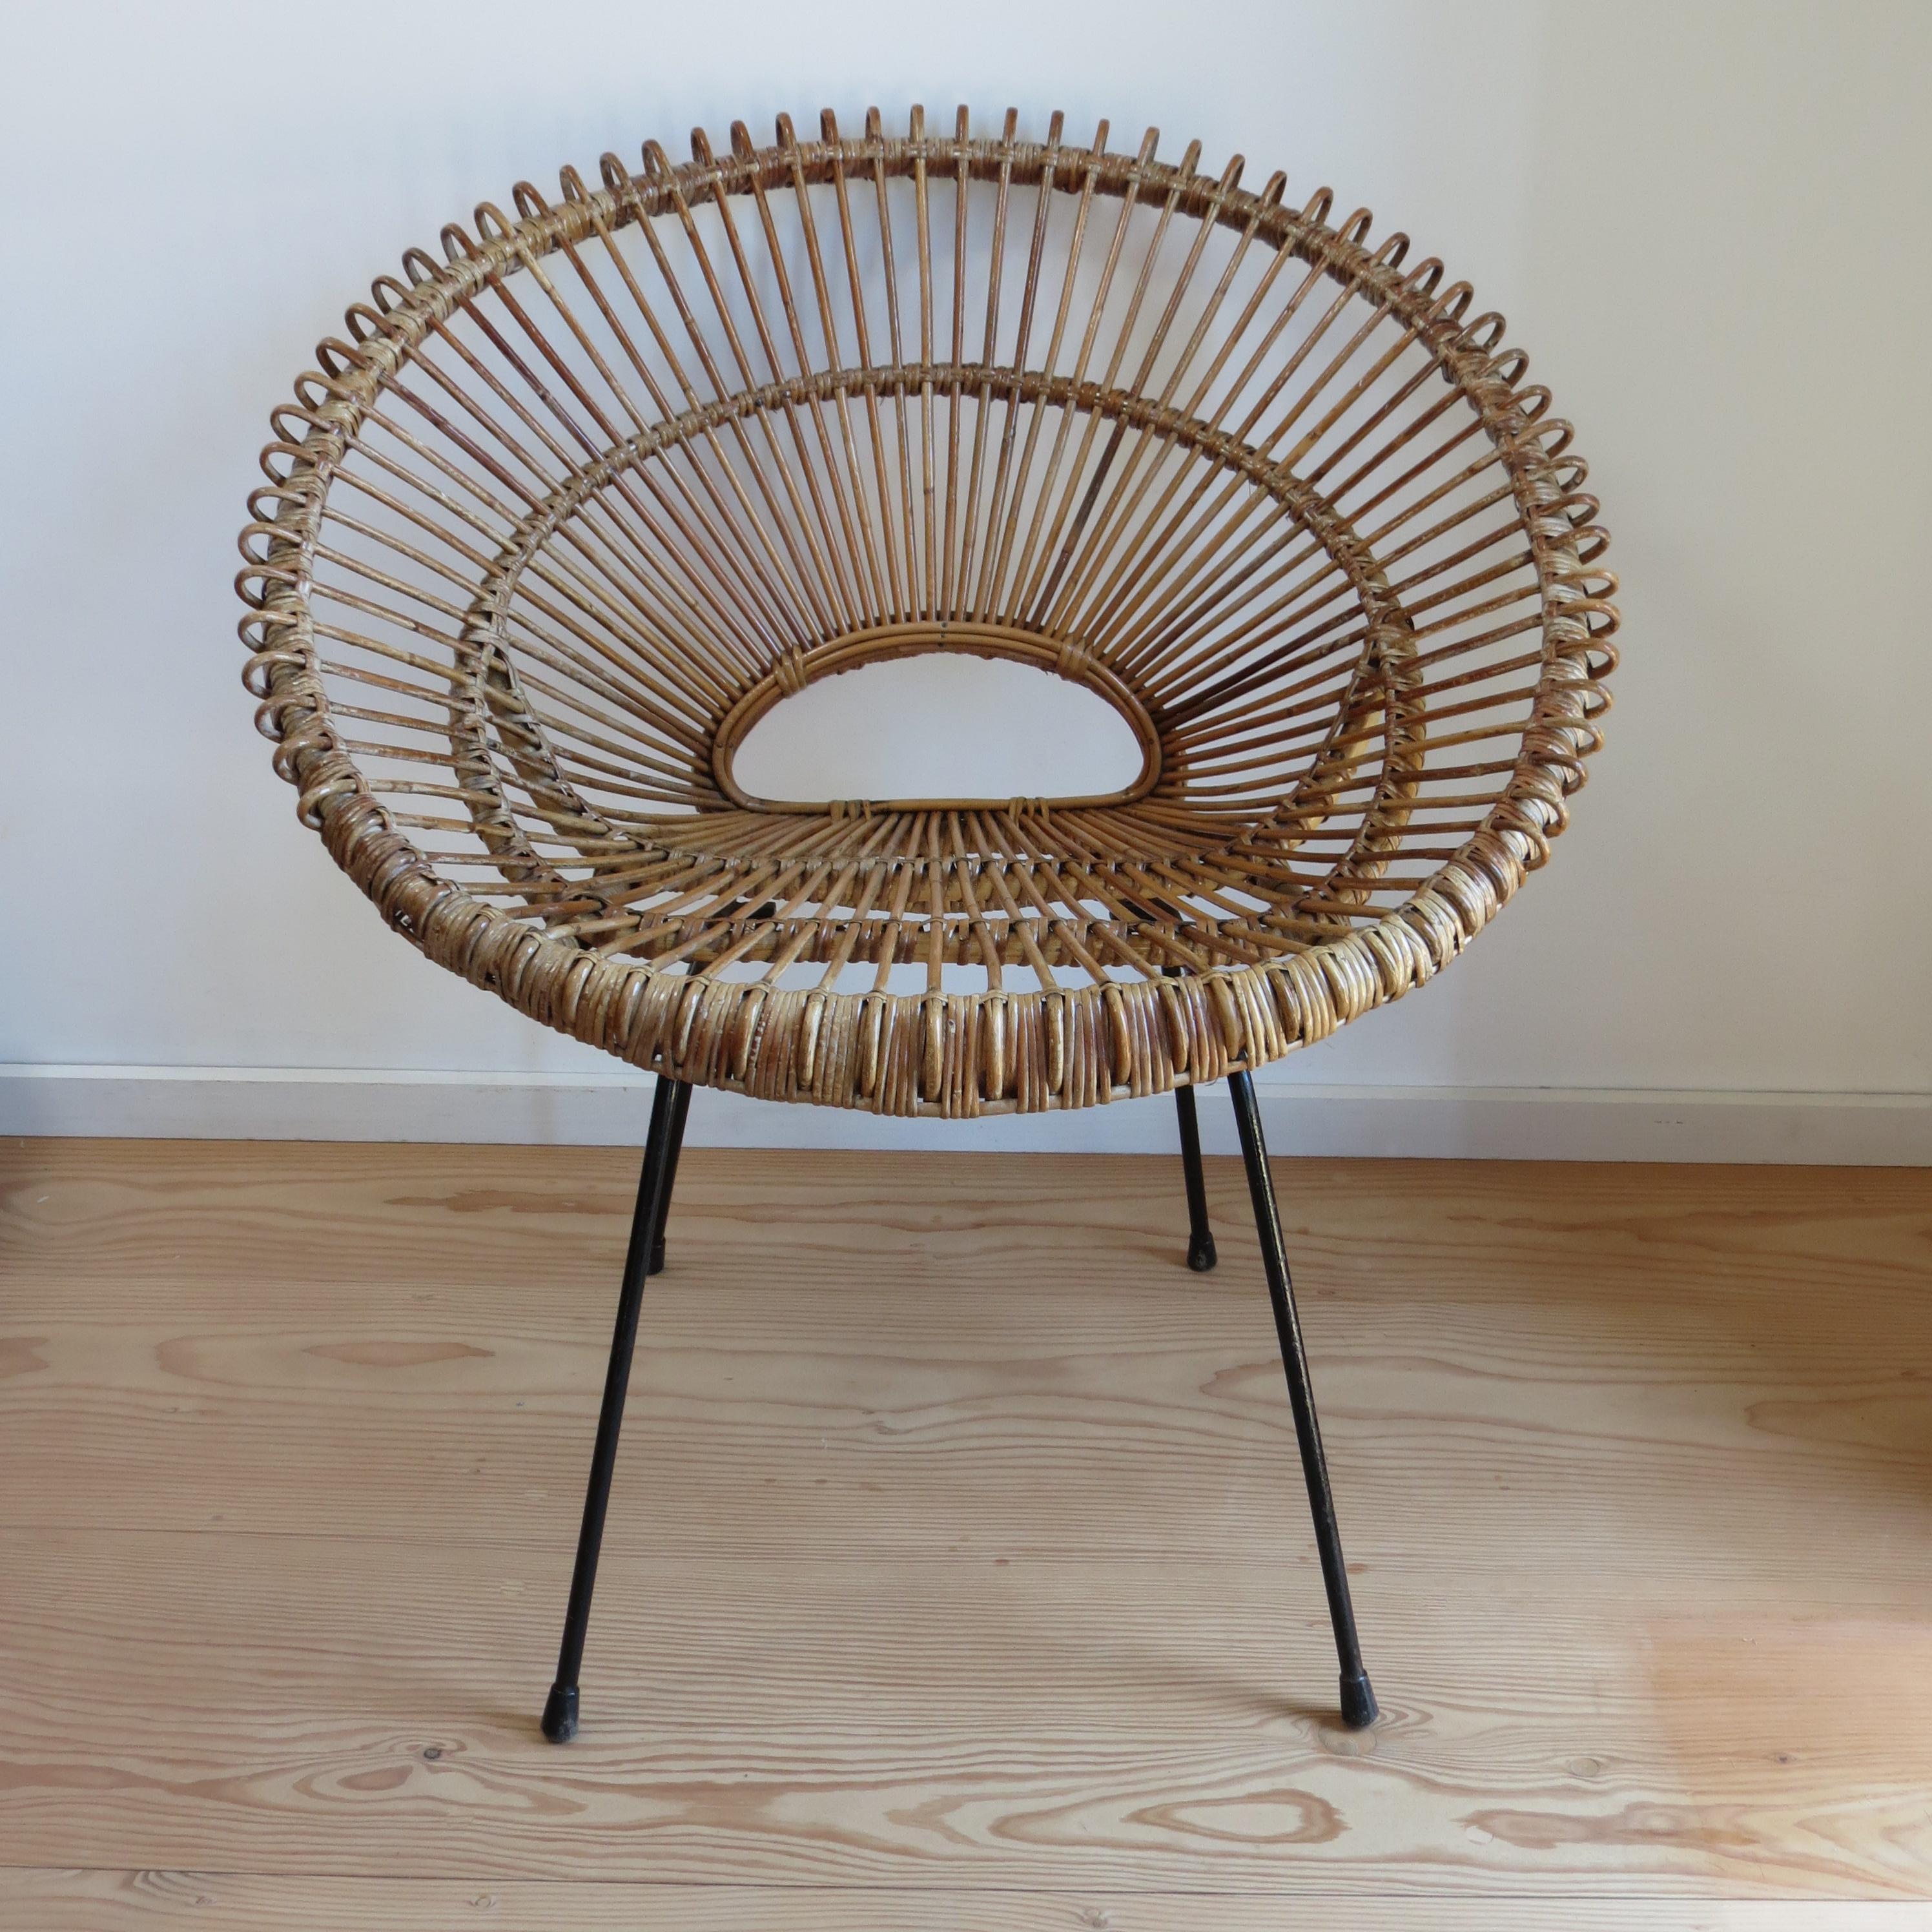 Wunderbar stilvoller, qualitativ hochwertiger Stuhl aus der Mitte des Jahrhunderts, im Stil von Franco Albini,  Gestell aus Metall und Stahl mit Rattanwannen-Sitz. Sie stammt aus den 1950er Jahren. 
2 Stück verfügbar, einzeln zu bezahlen. 
In gutem